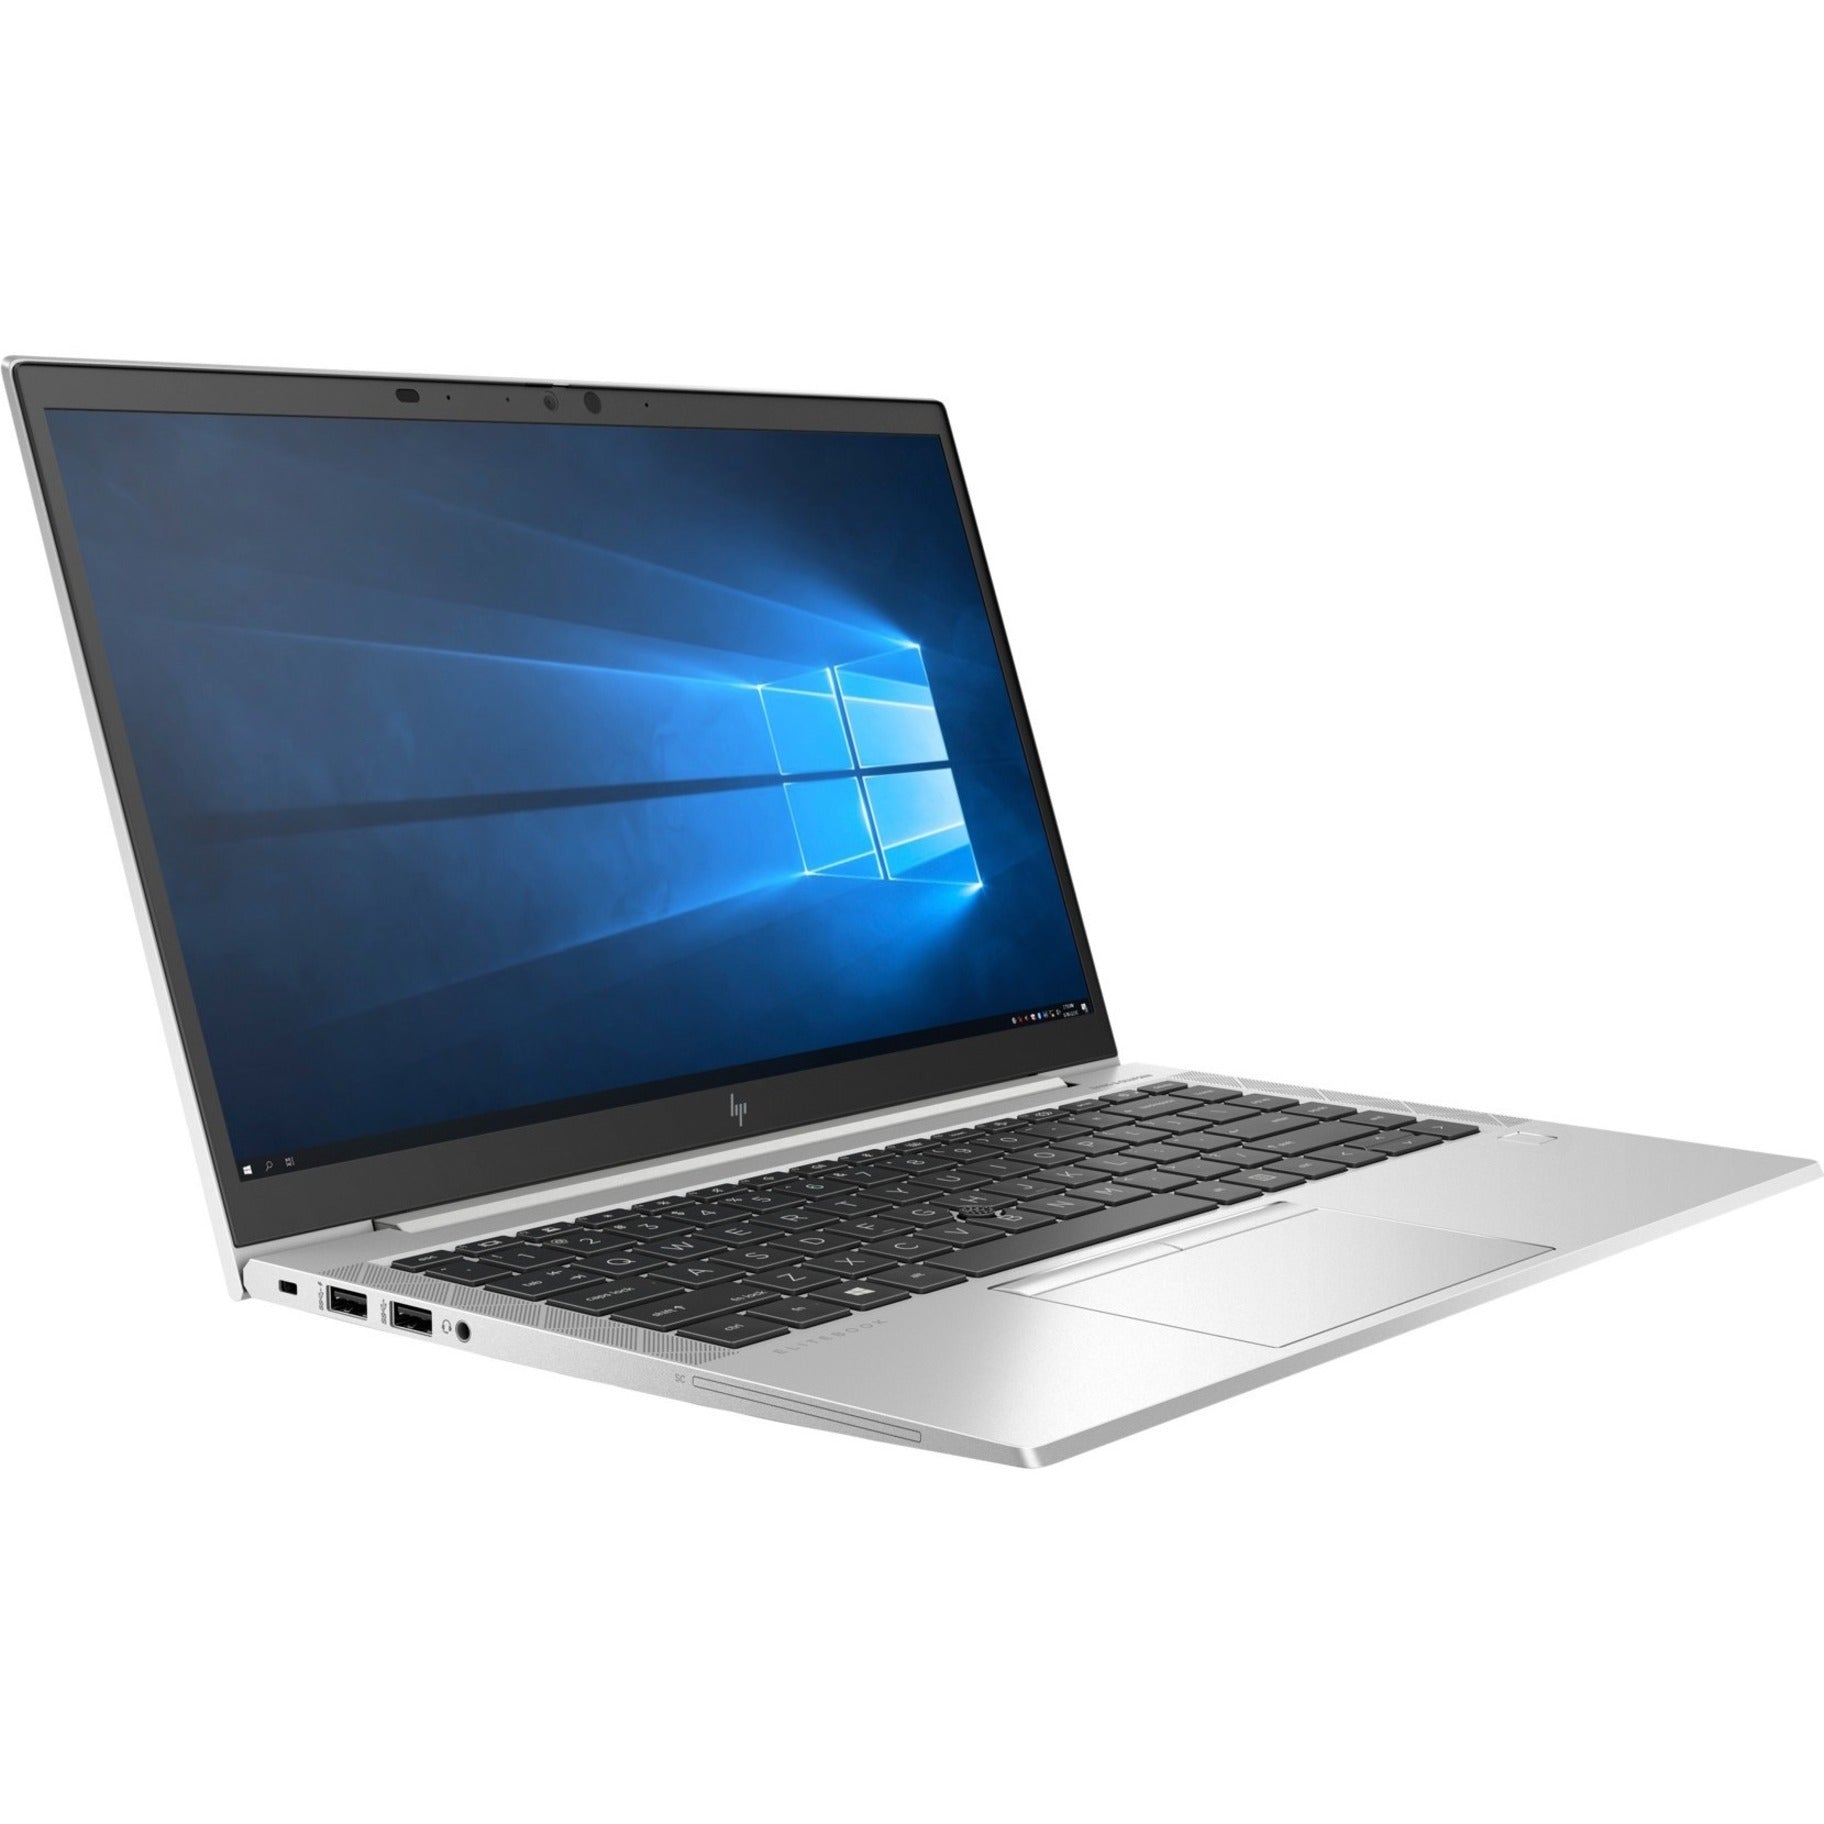 HP mt46 Thin Client Notebook, Full HD, Ryzen 3 PRO 4450U, 8GB RAM, 128GB SSD